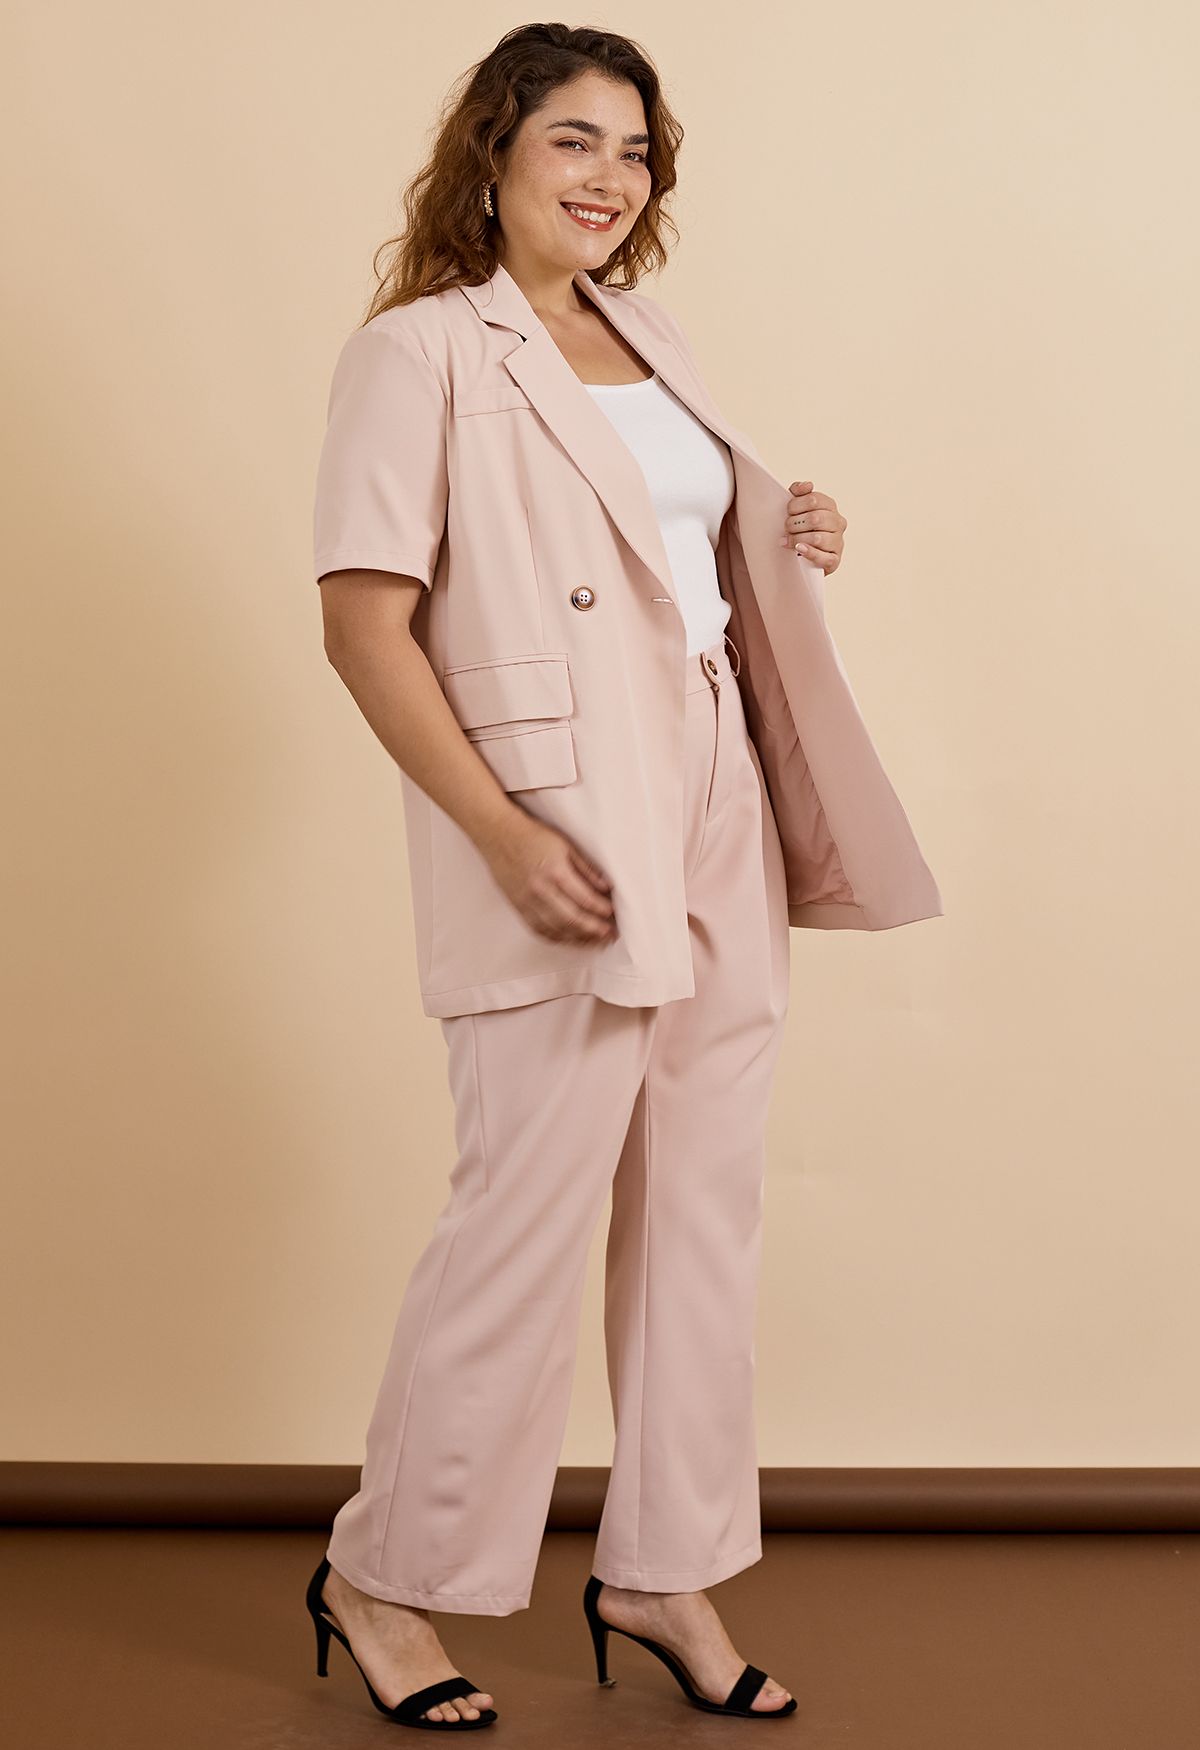 Flap Pockets Trim Short-Sleeve Blazer in Pink